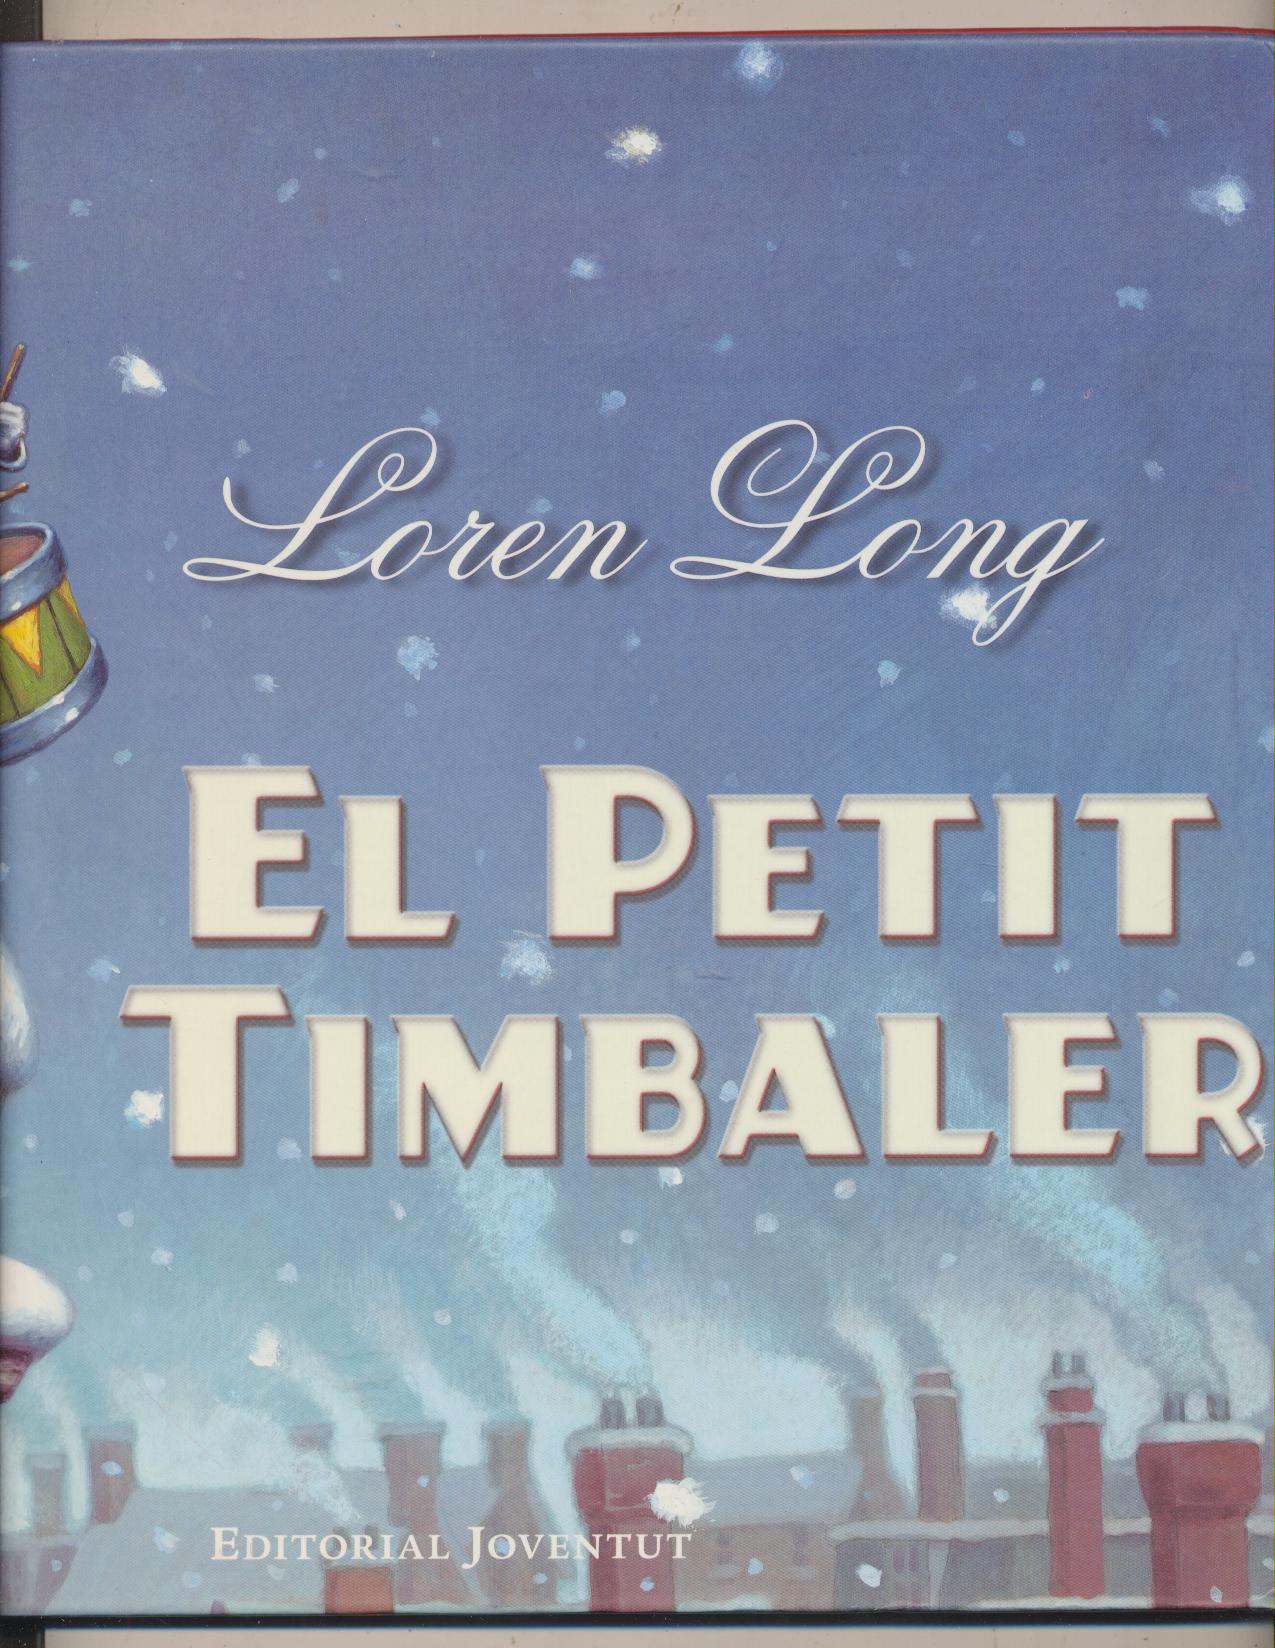 El Petit Timbaler. Loren Long. 1ª Edición Editorial Juventud 2009